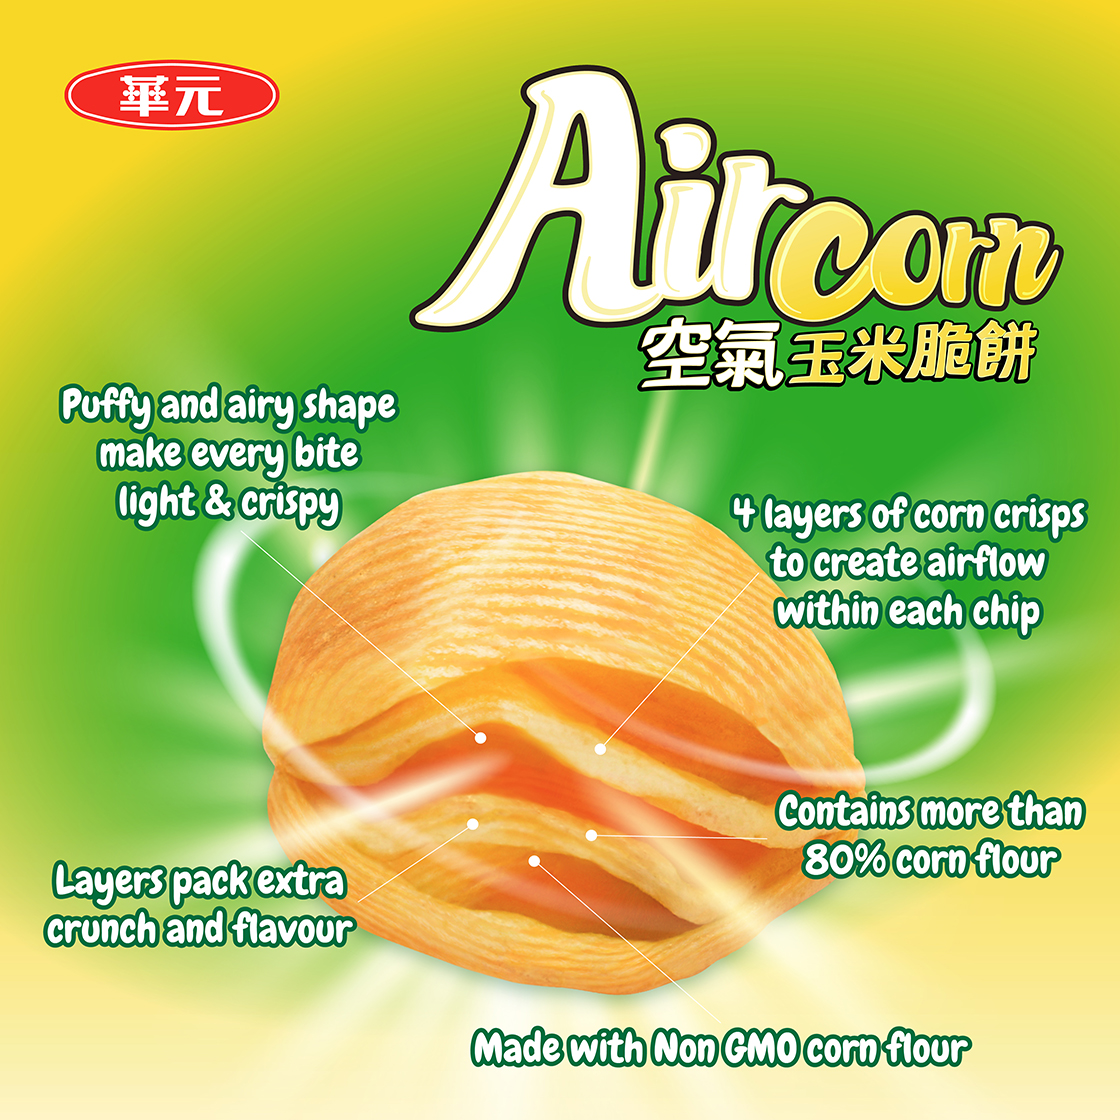 Aircorn2